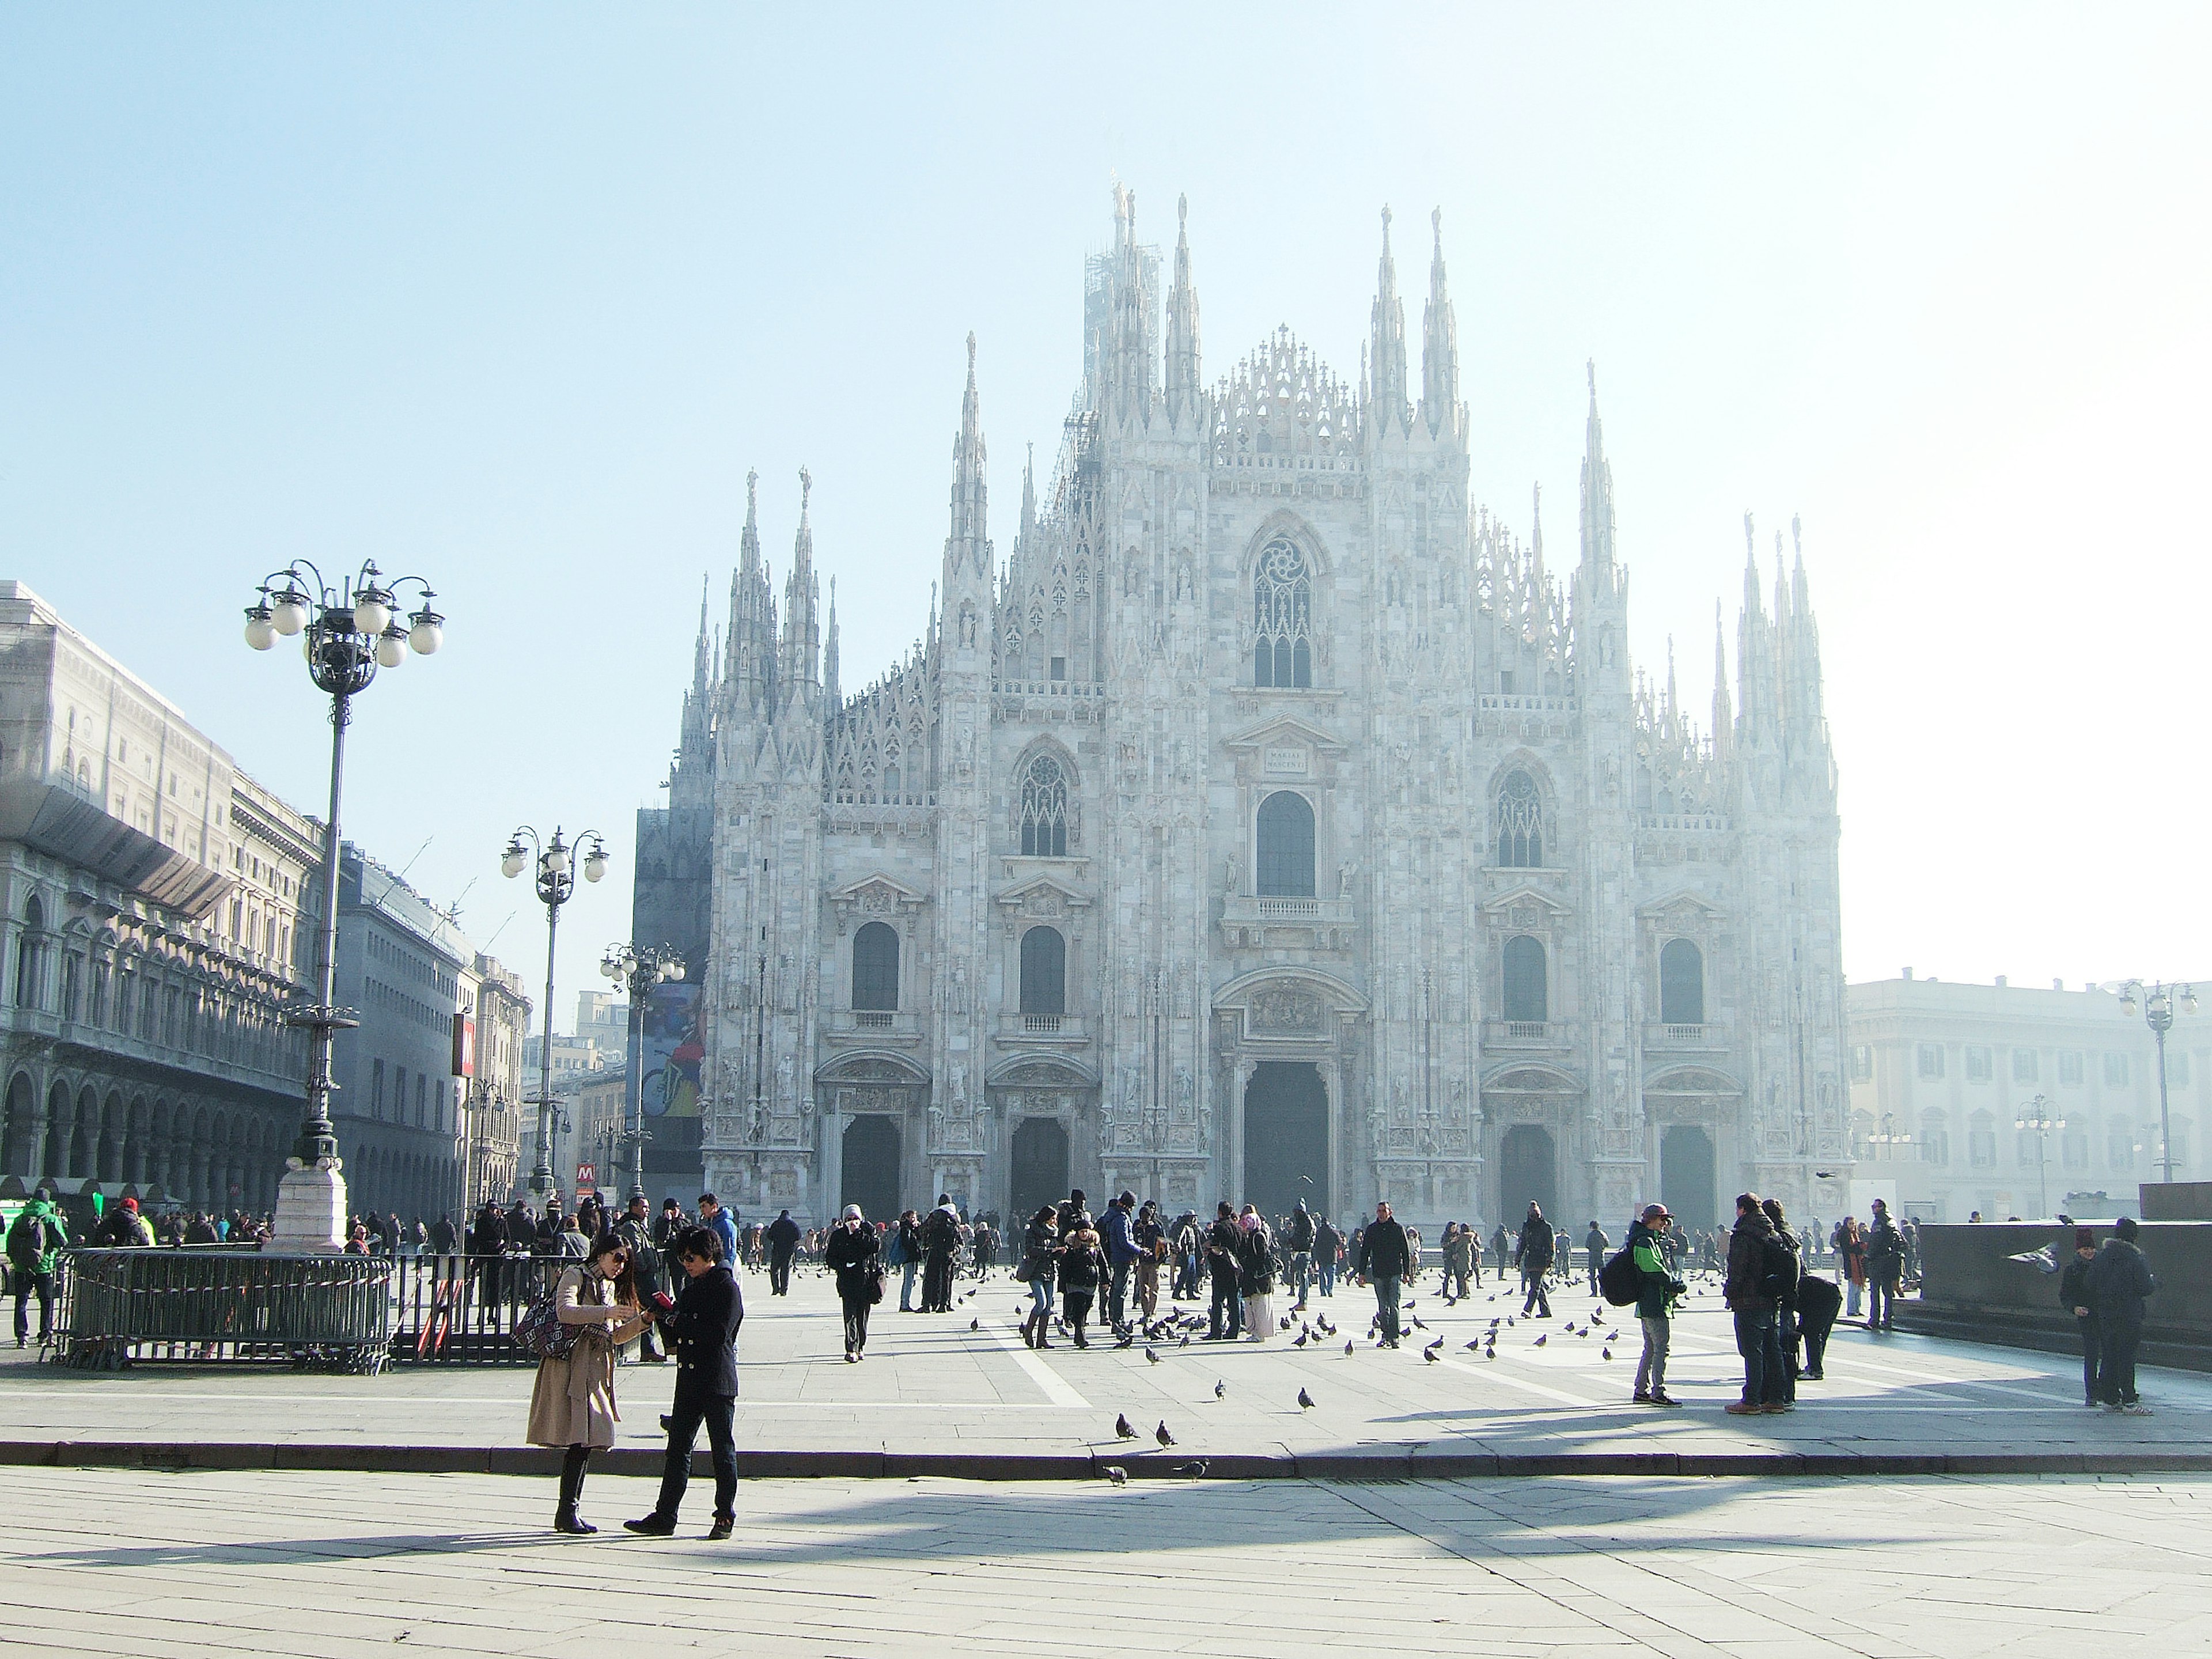 Exterior of the Duomo di Milano and Piazza del Duomo.